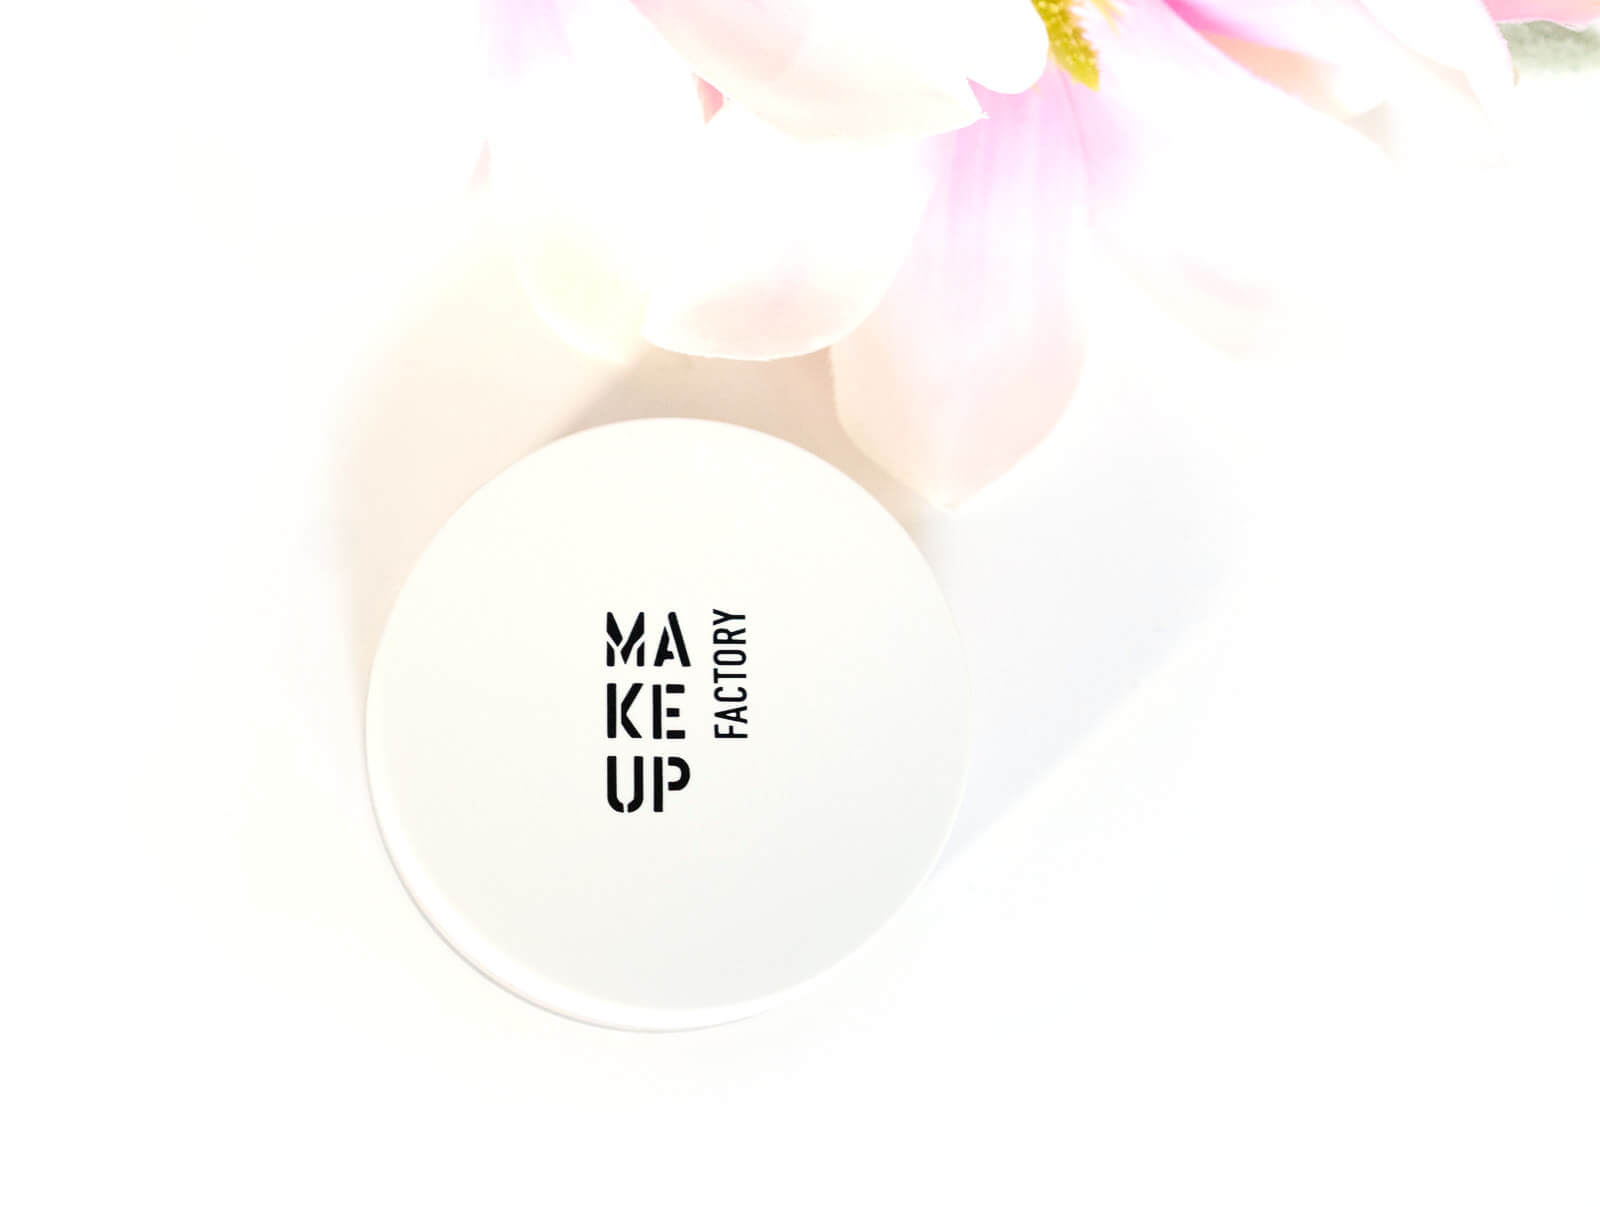 Review - Ein wunderschönes Make-up zaubern mit den Produkten von Make up Factory 17